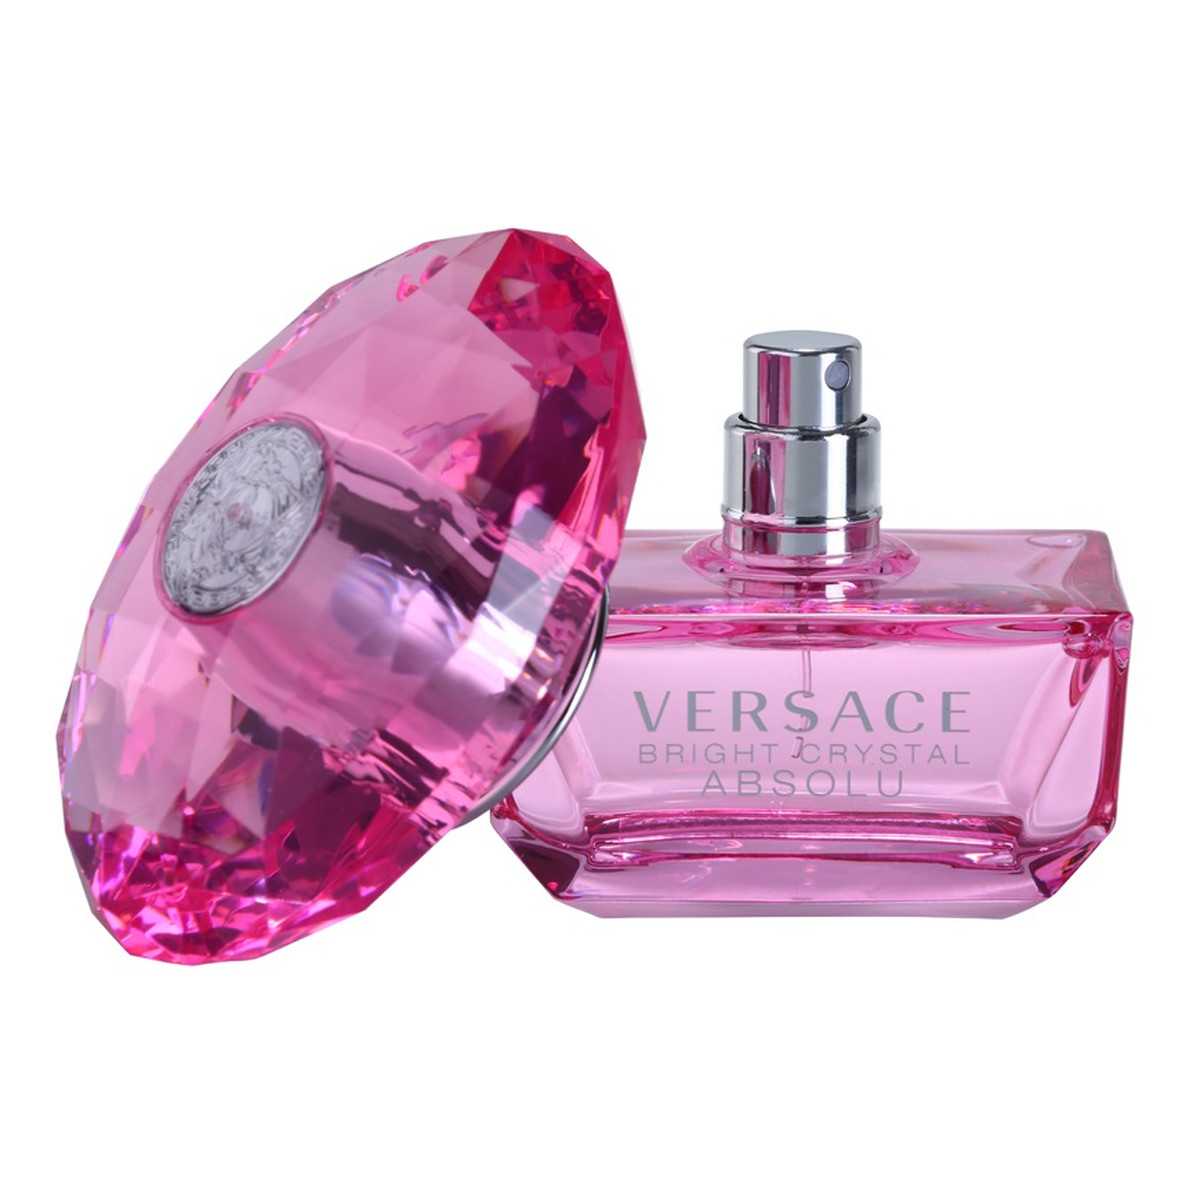 Versace Bright Crystal Absolu woda perfumowana dla kobiet 50ml